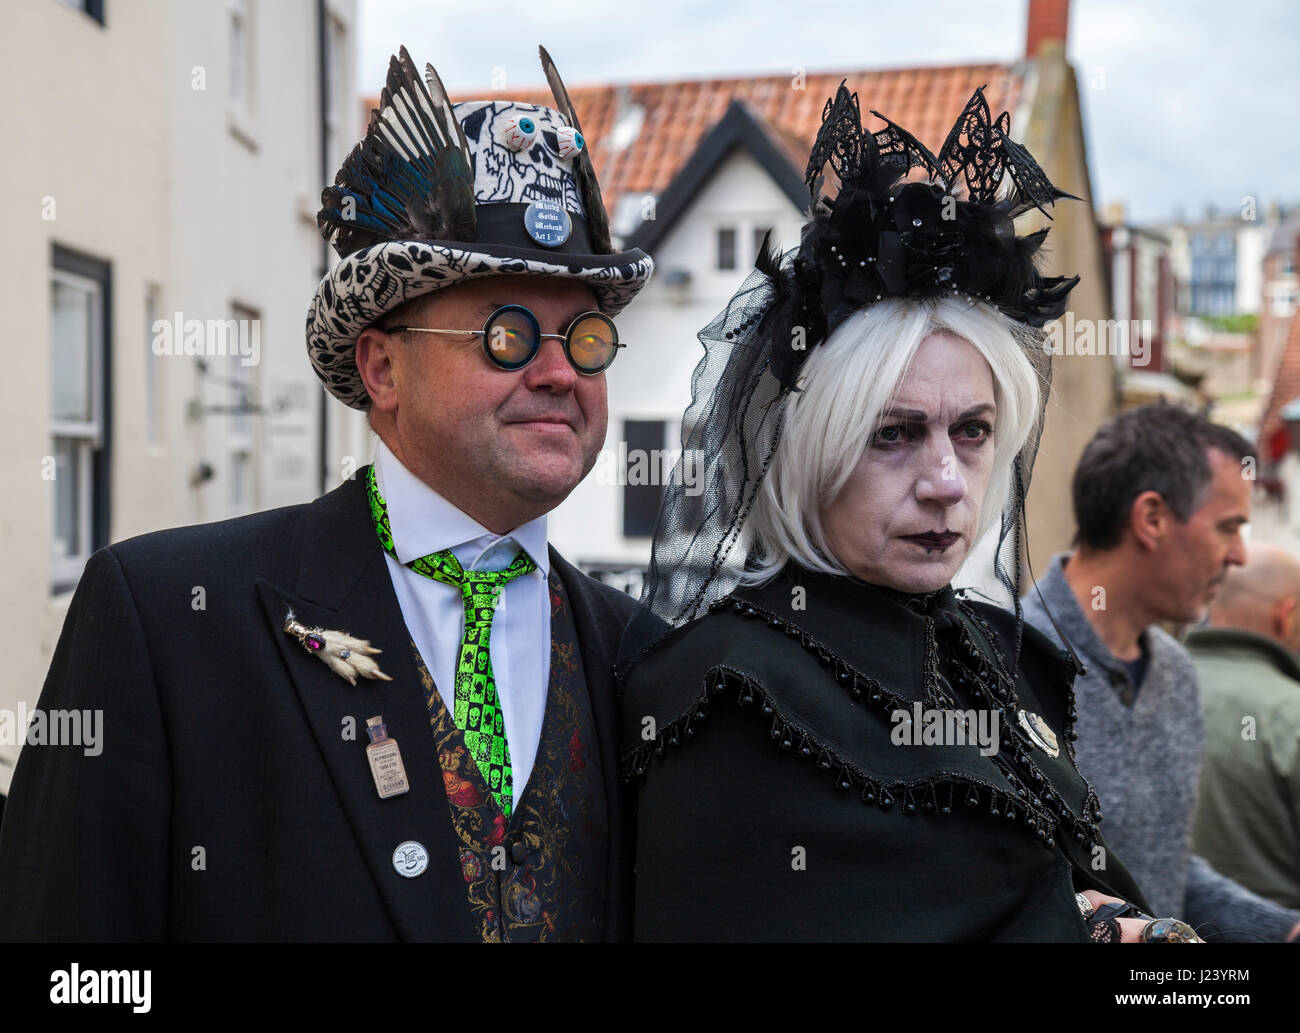 Zwei Goten posieren für Bilder bei den Goth-Wochenende-Feierlichkeiten in Whitby, North Yorkshire, England, UK Stockfoto